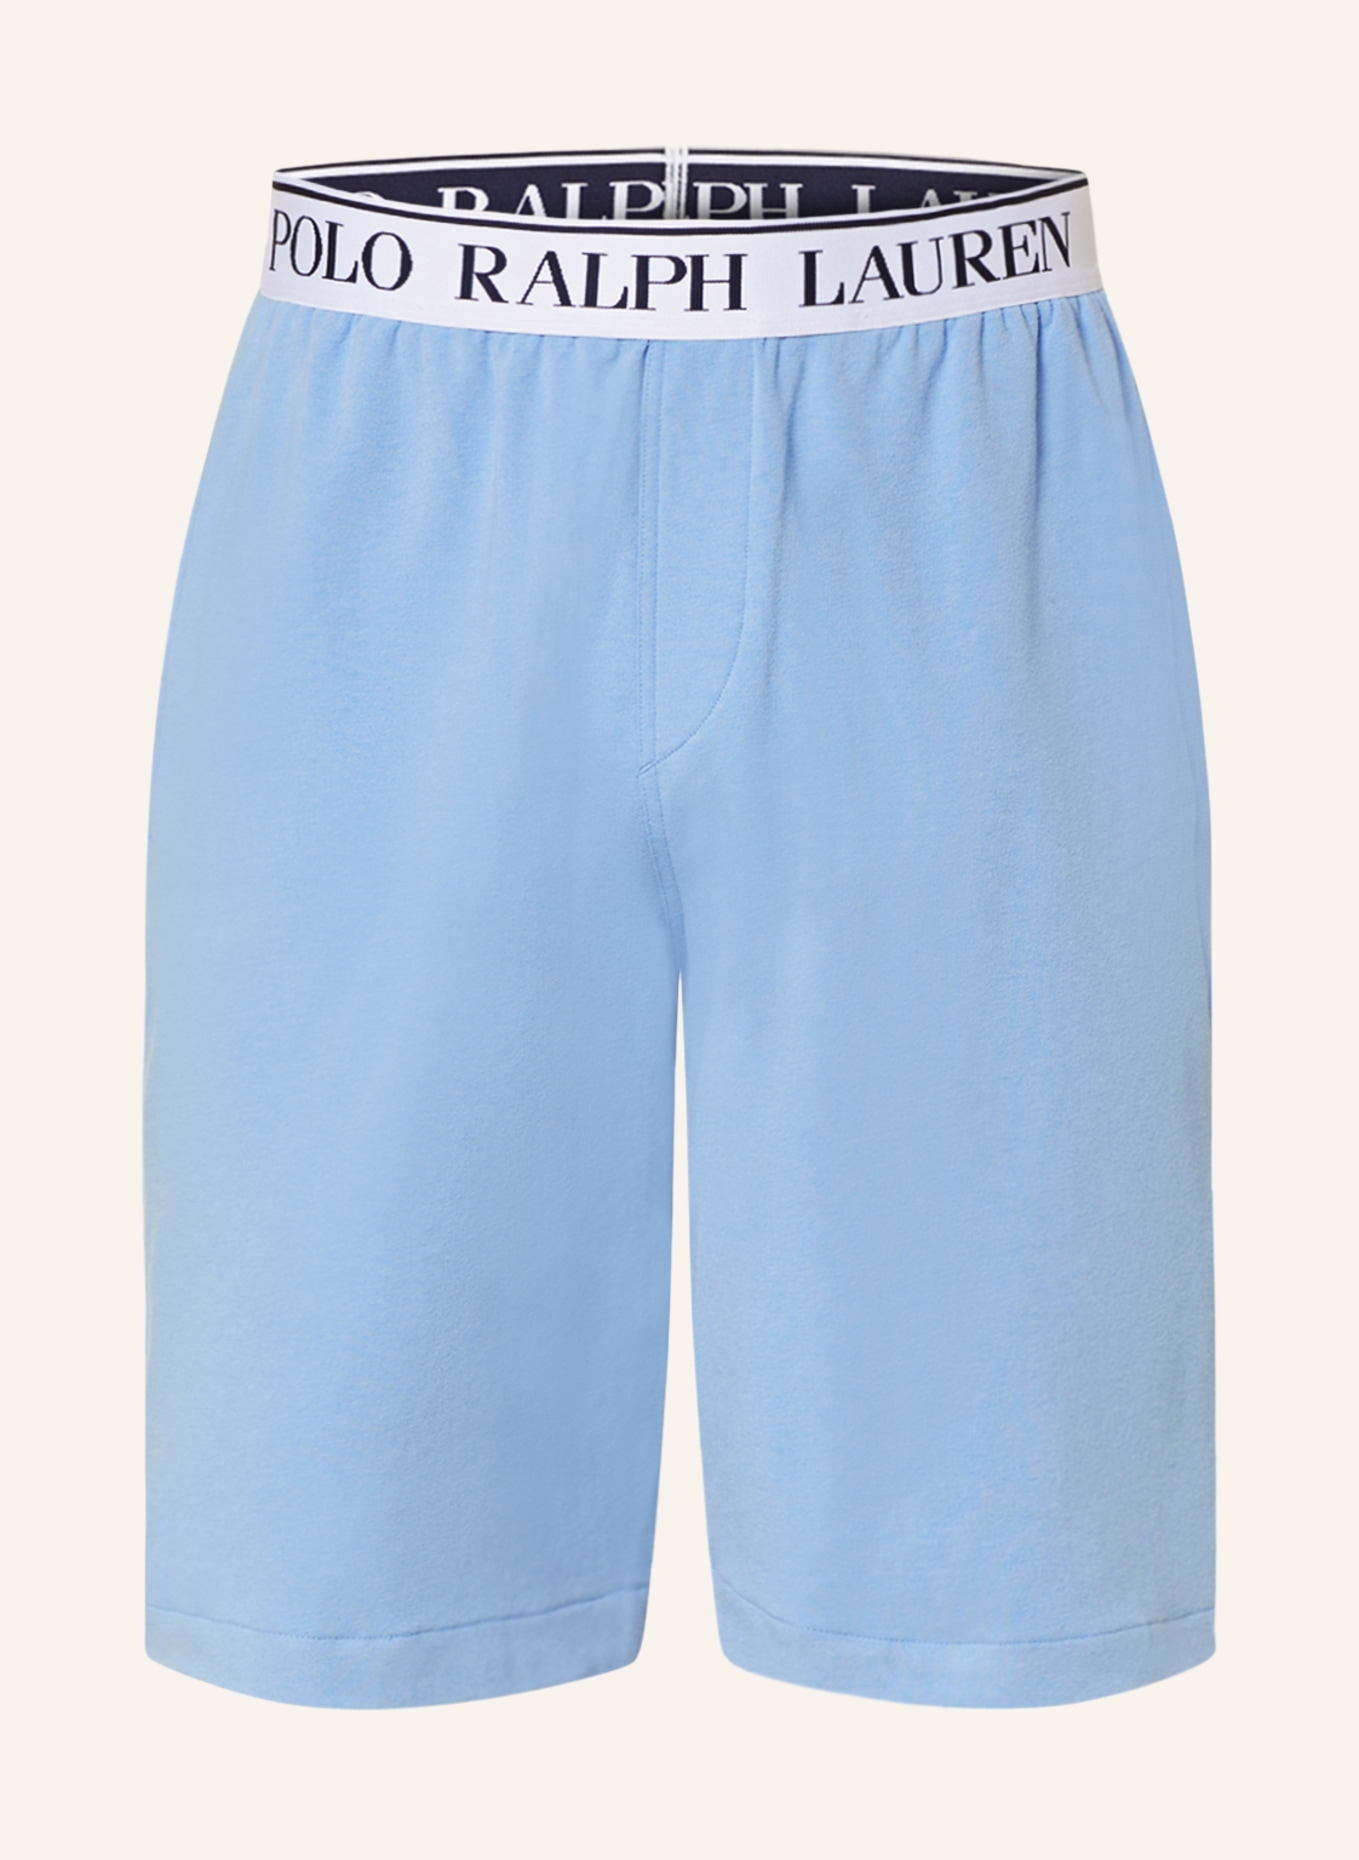 POLO RALPH LAUREN Lounge shorts, Color: LIGHT BLUE (Image 1)